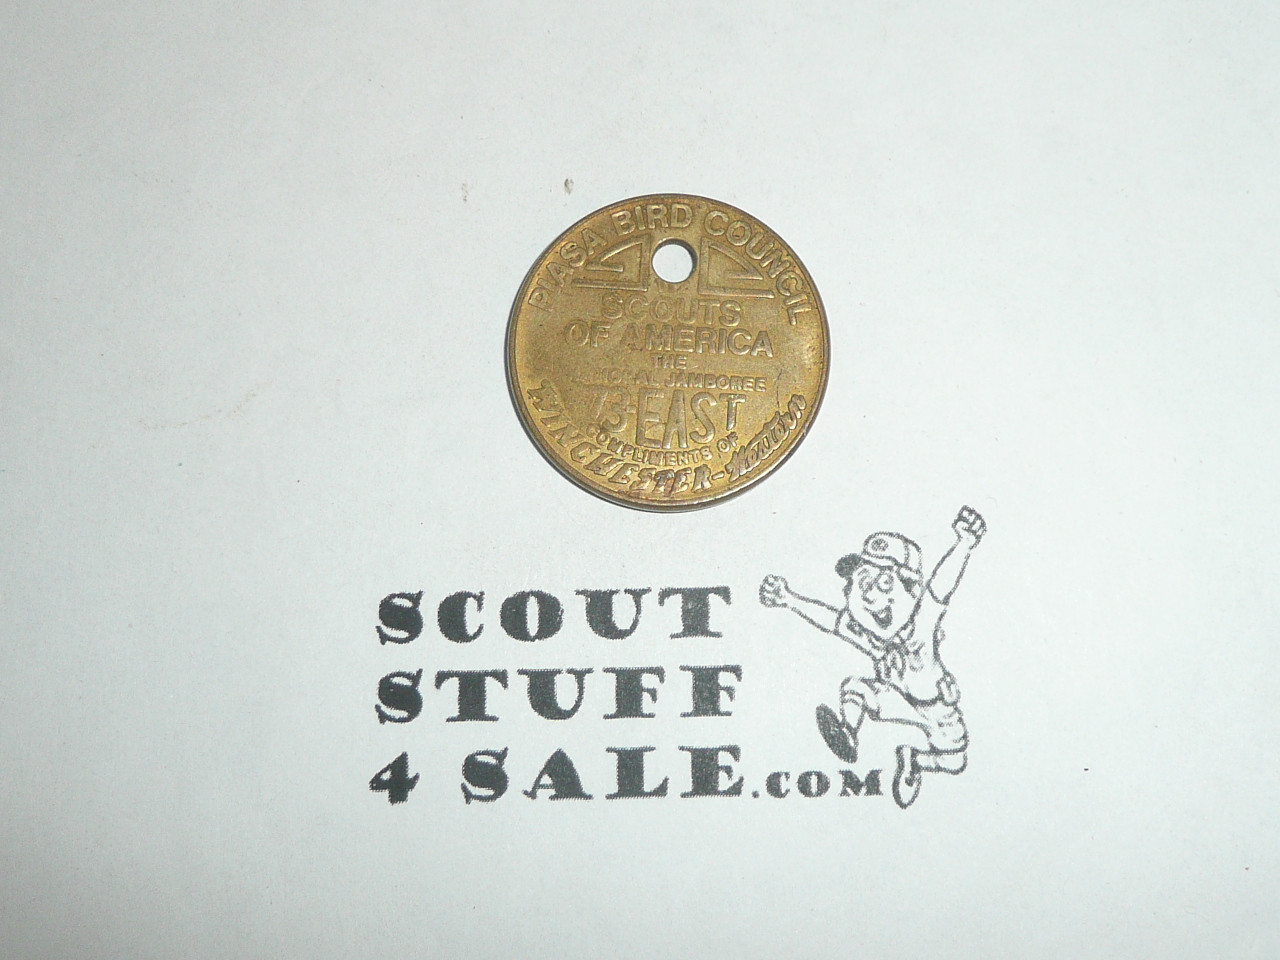 1973 National Jamboree Piasa Bird Council coin/token